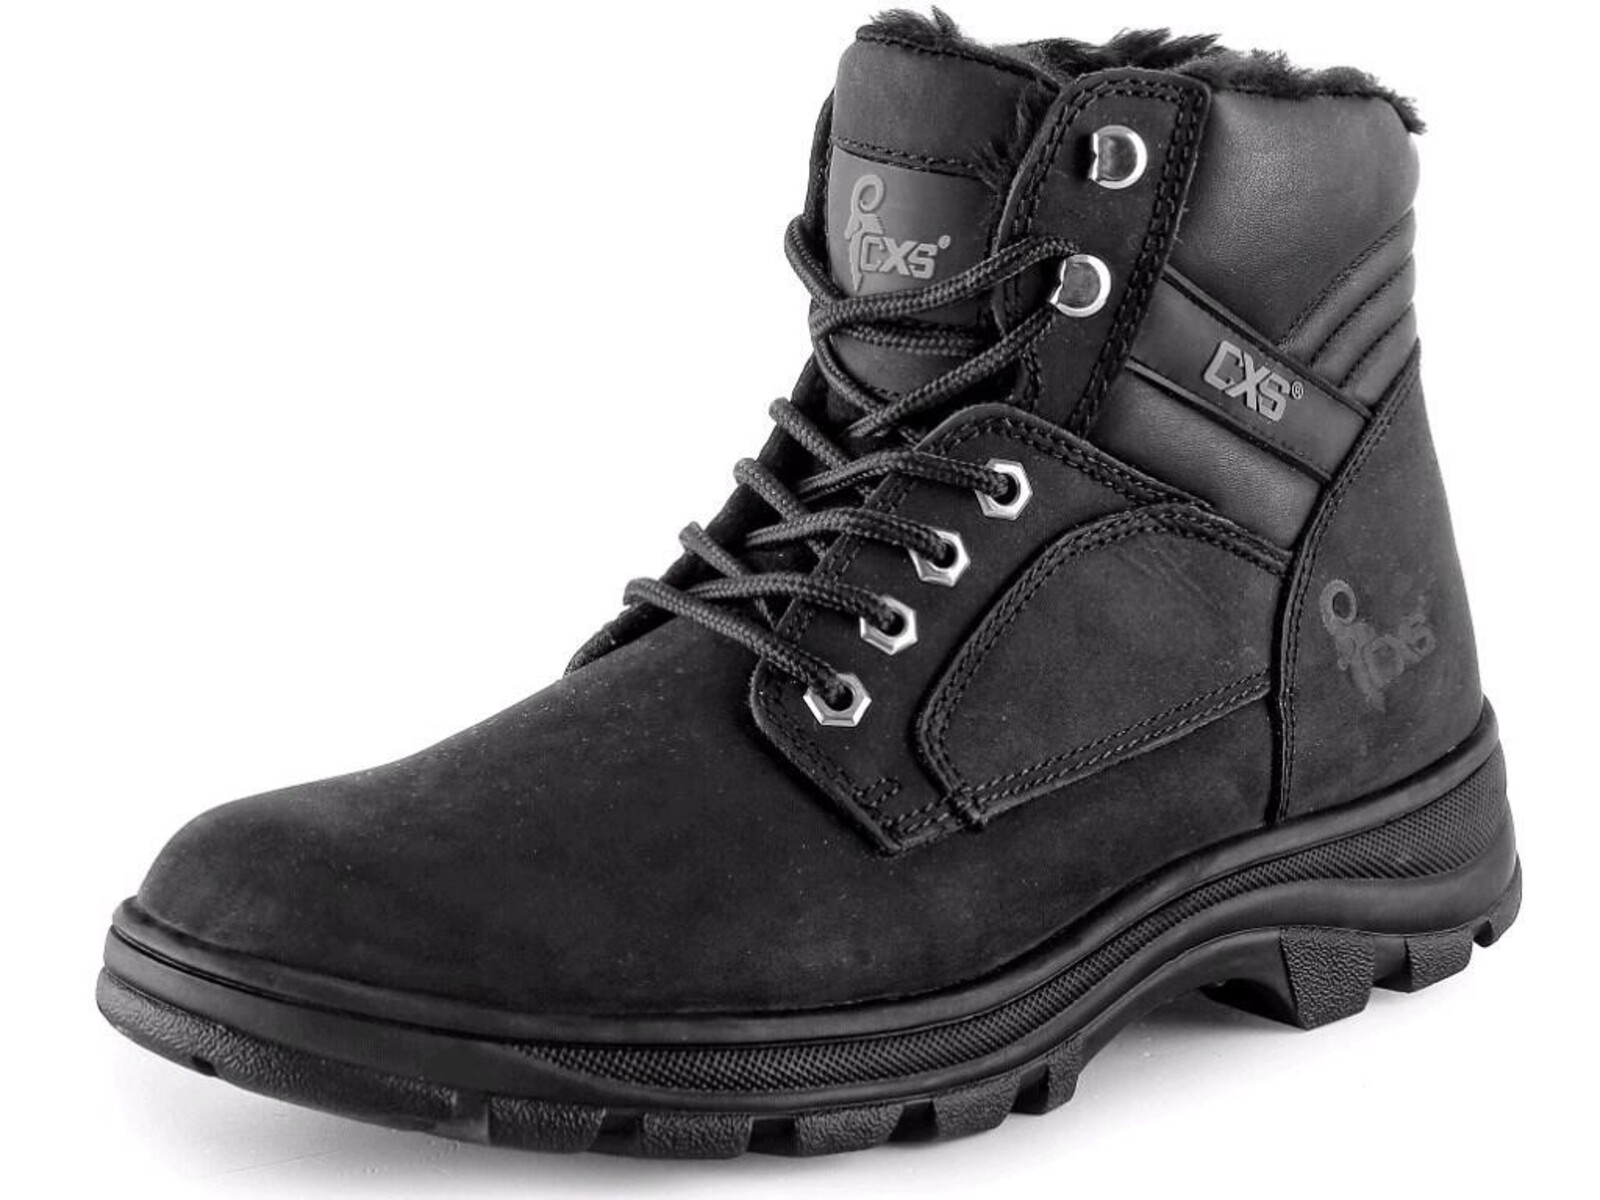 Zimná členková obuv CXS Road Industry FO E CI SRA - veľkosť: 46, farba: čierna